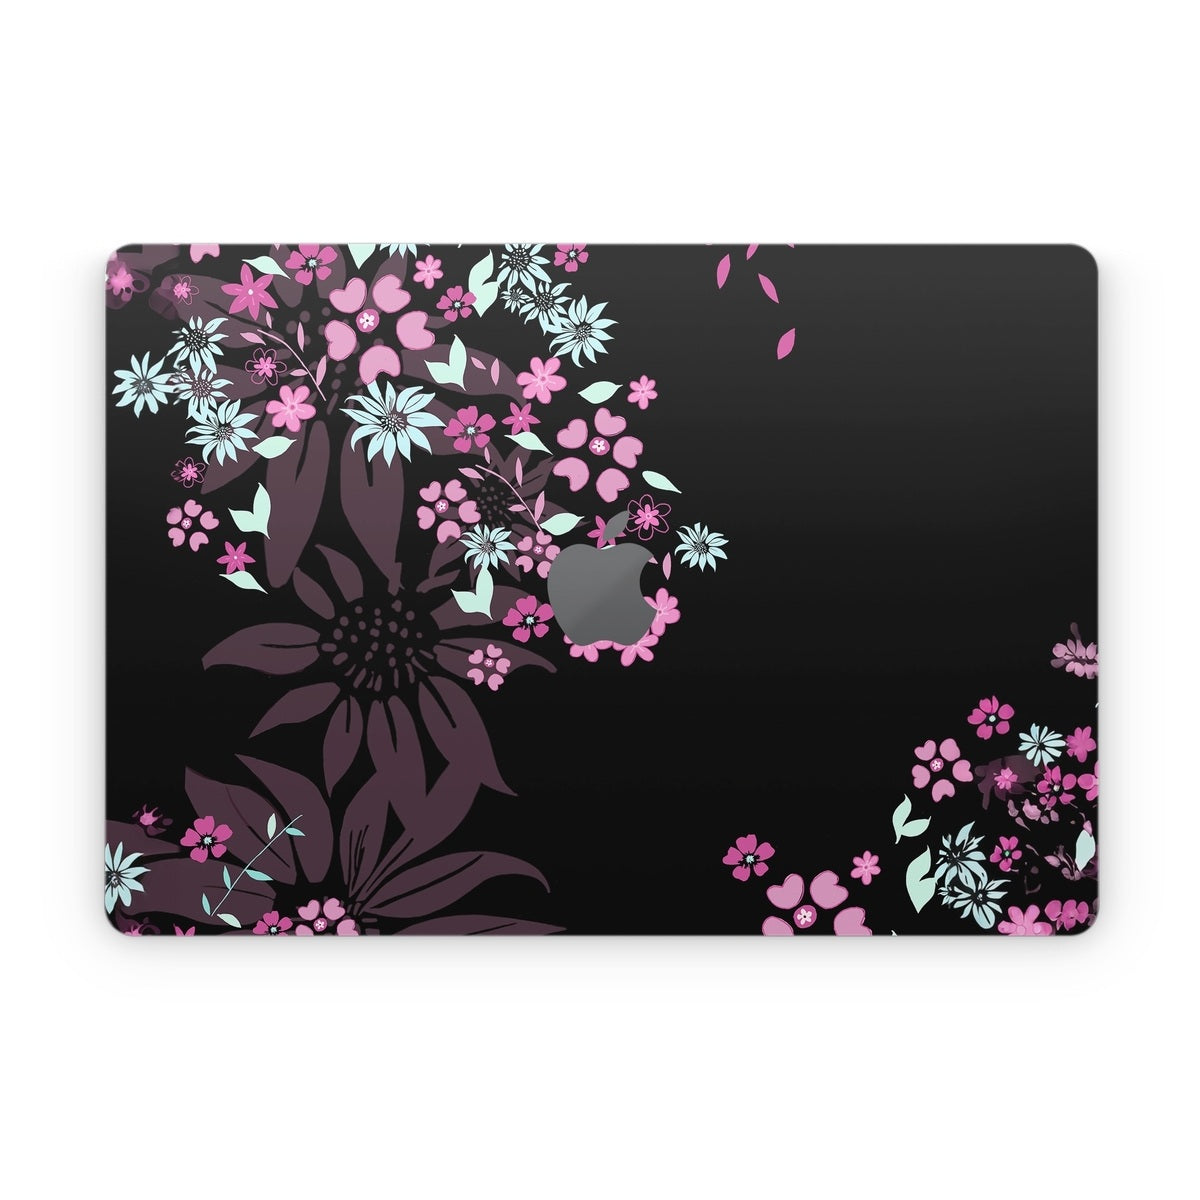 Dark Flowers - Apple MacBook Skin